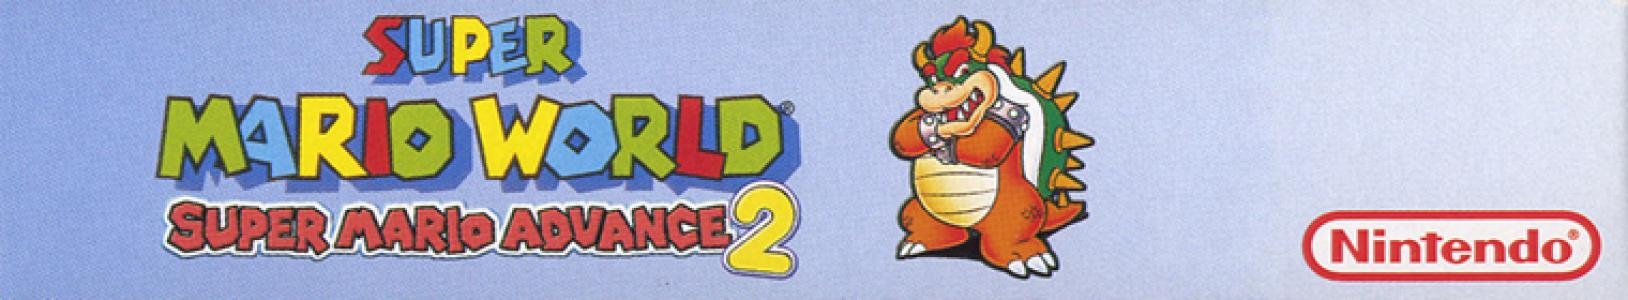 Super Mario Advance 2: Super Mario World banner